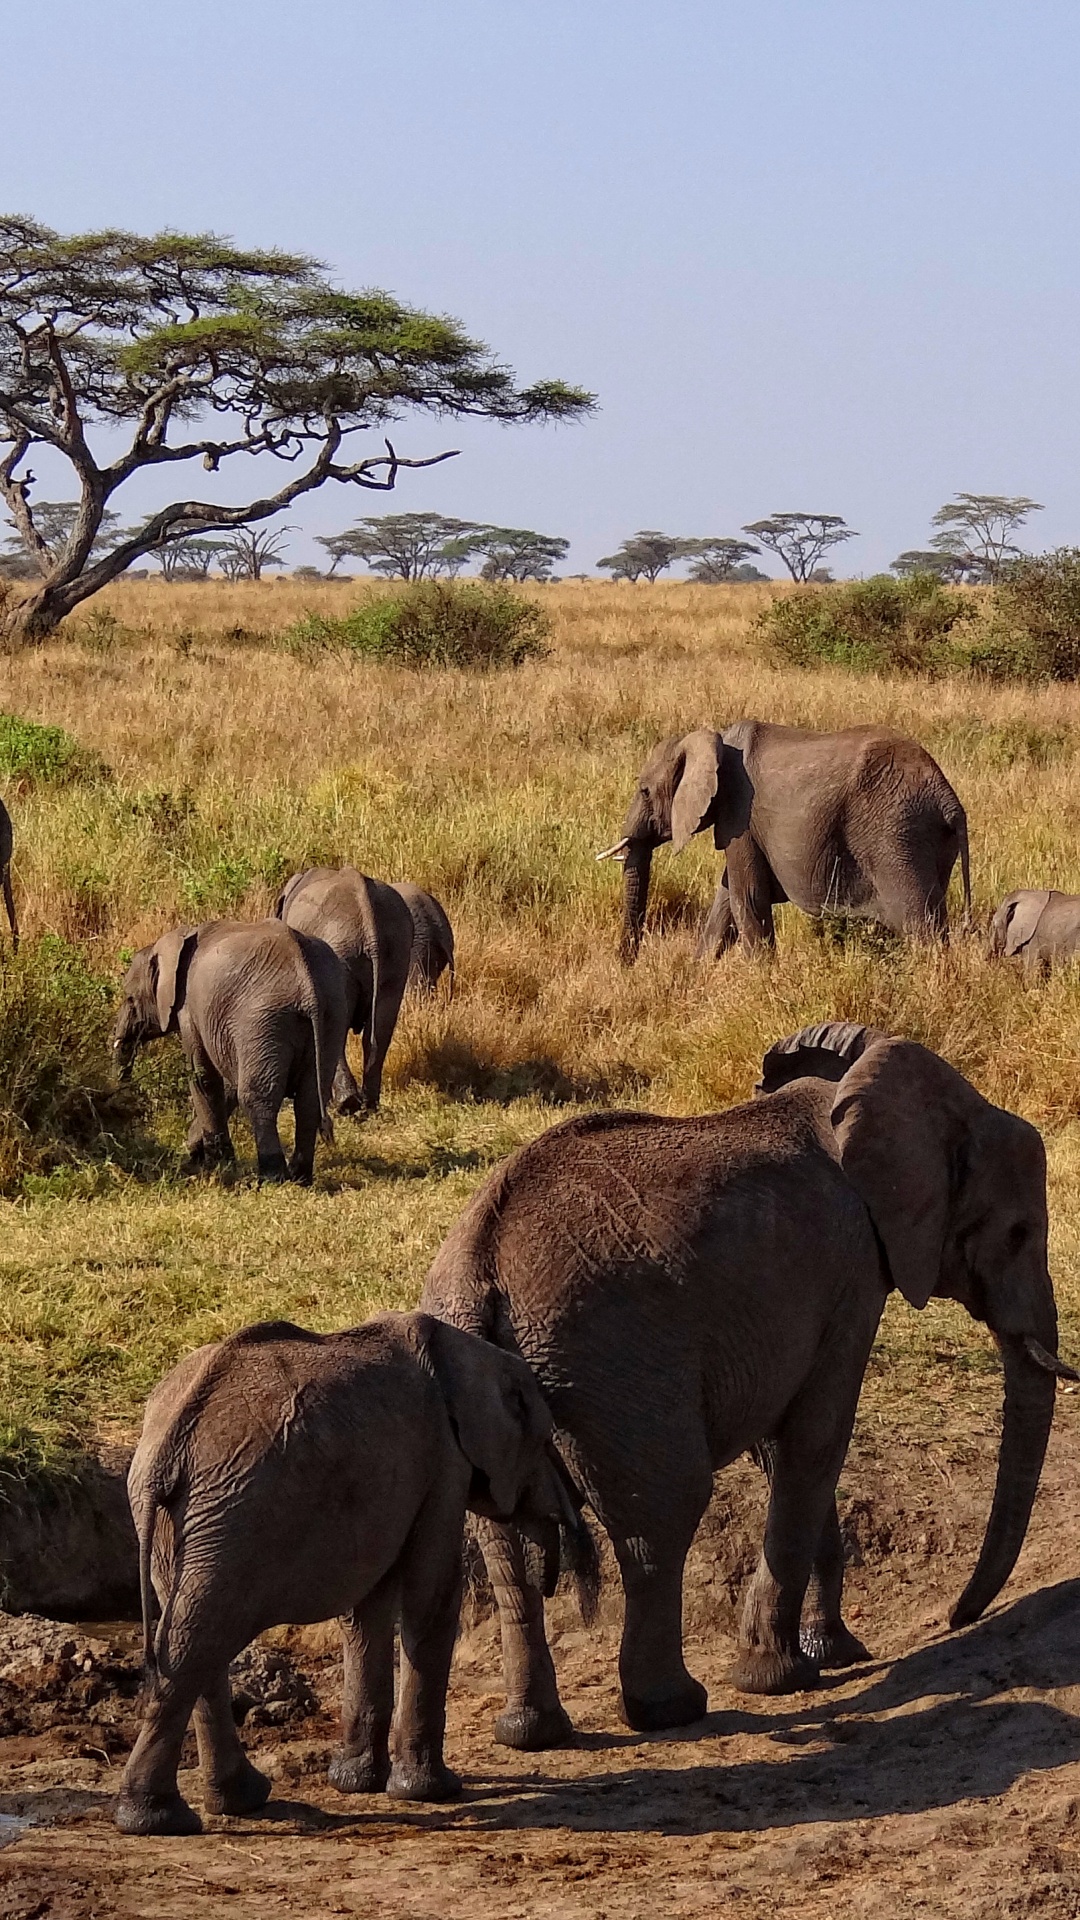 塞伦盖蒂国家公园, Safari, 公园, 野生动物, 陆地动物 壁纸 1080x1920 允许